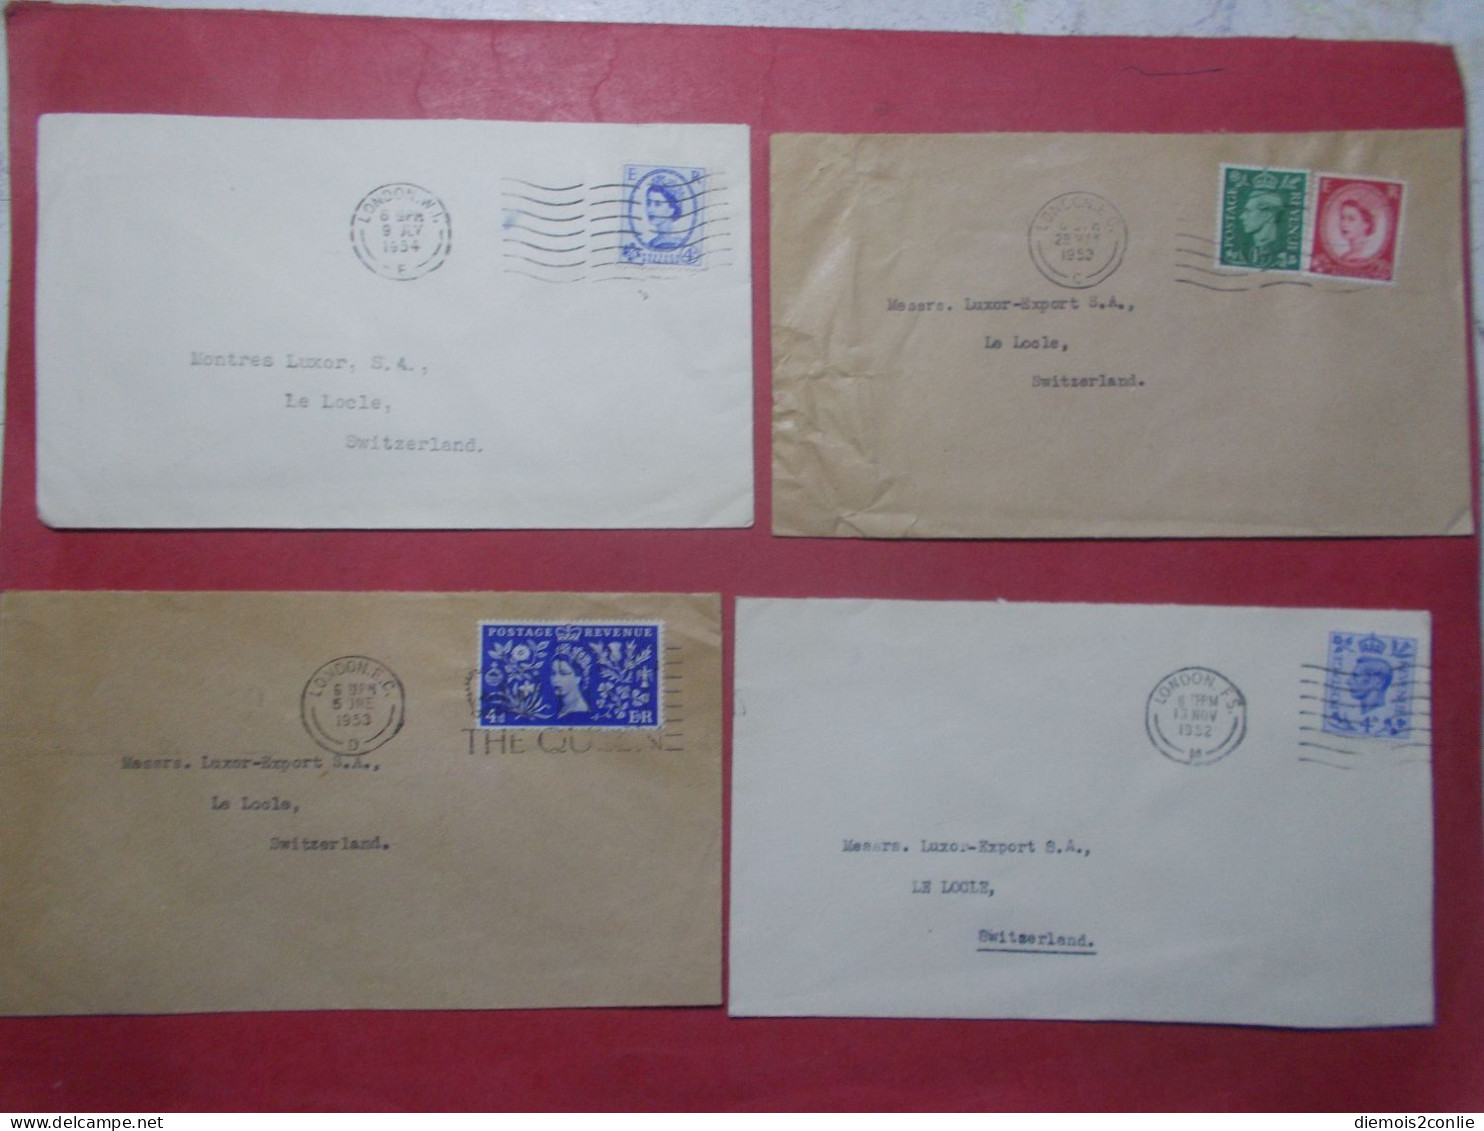 Marcophilie - Lot 4 Lettres Enveloppes Oblitérations Timbres ROYAUME UNI Destination SUISSE (B334) - Postmark Collection